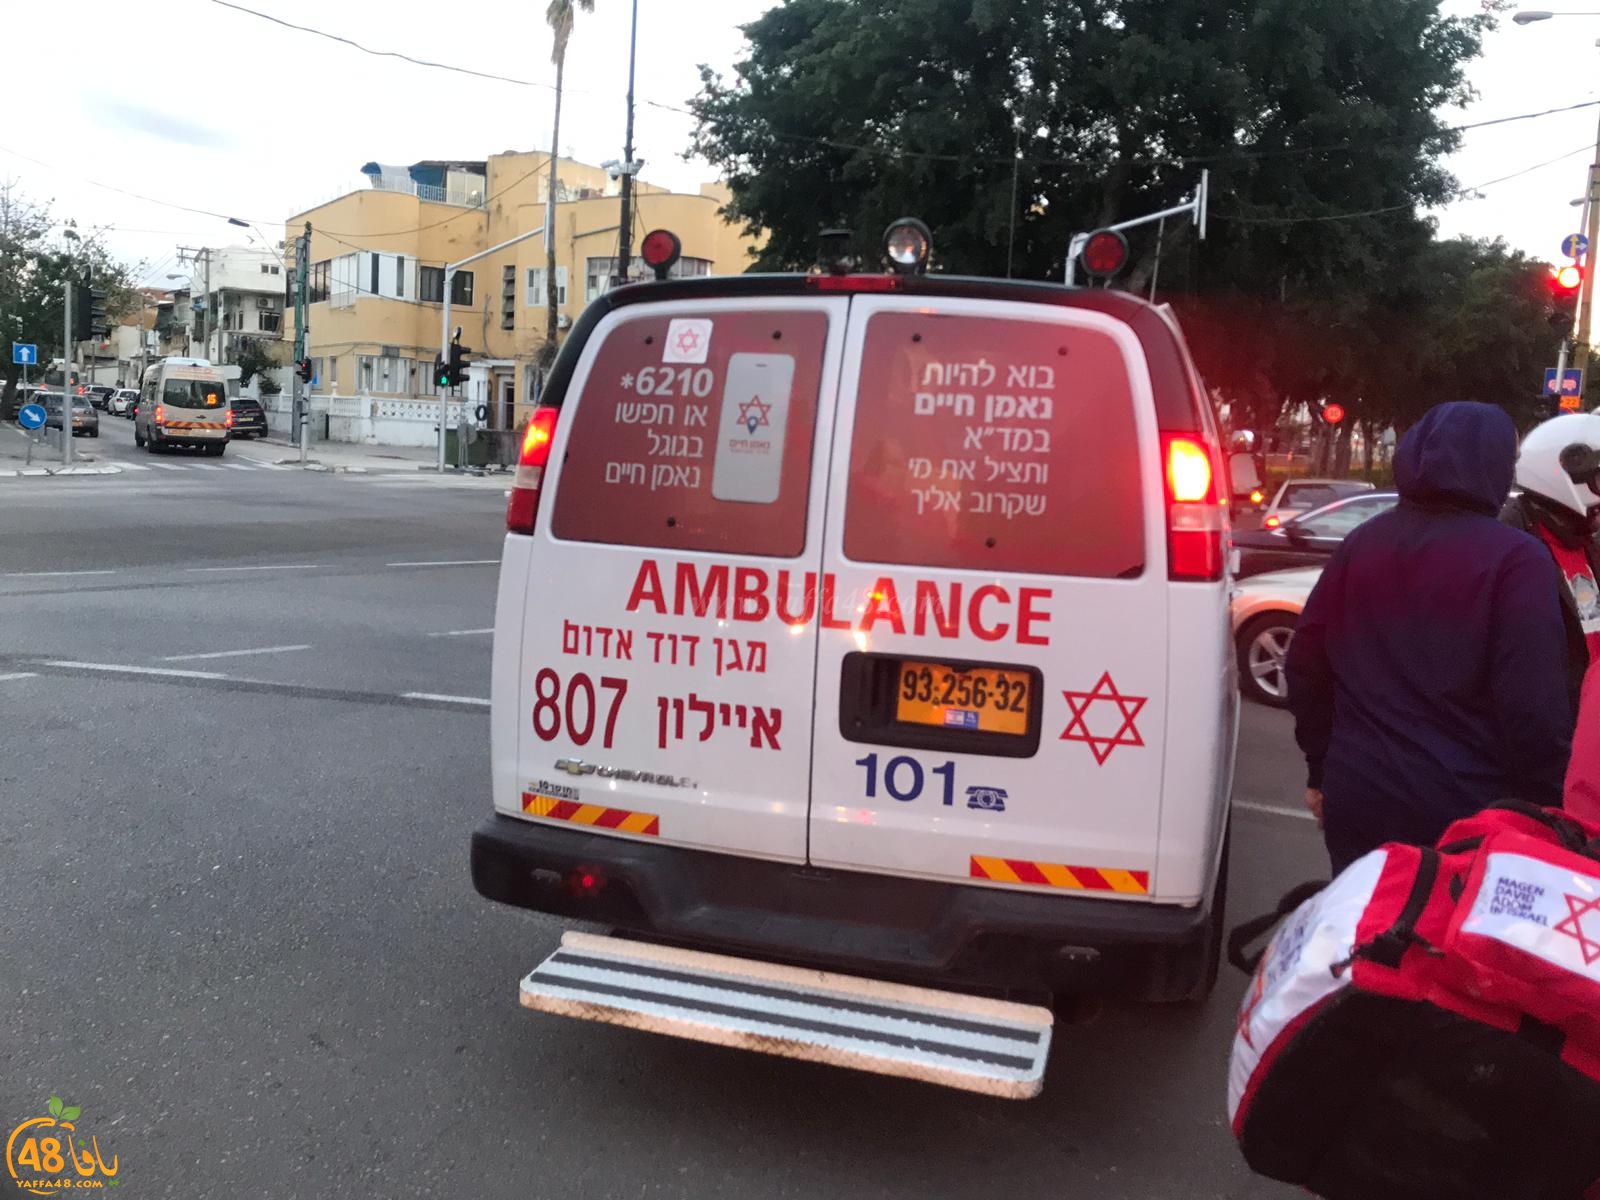  بالصور: إصابة متوسطة لشاب بحادث بين دراجتين نارية وهوائية في يافا